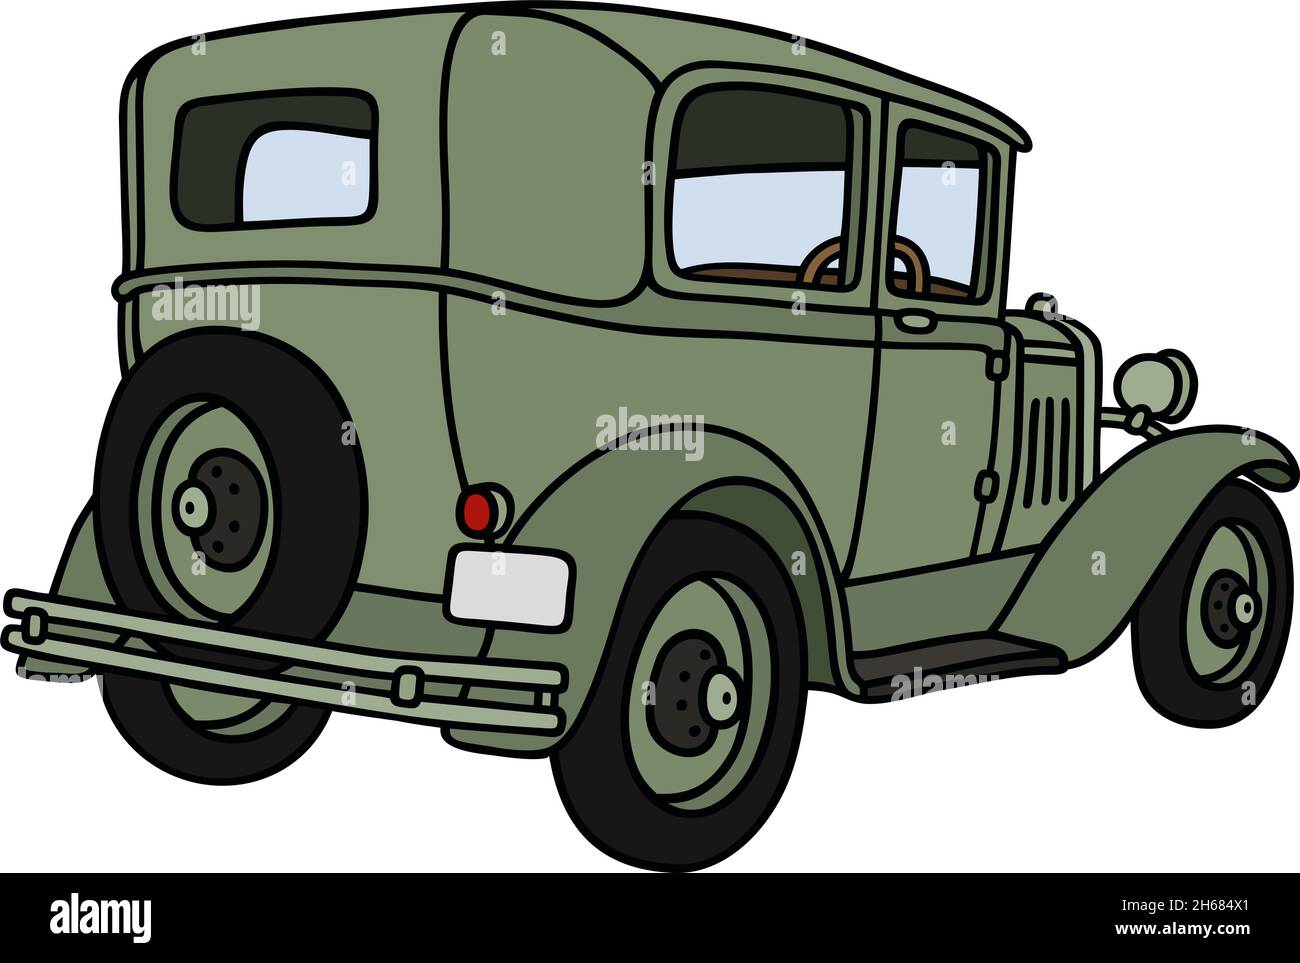 Vieille voiture ancienne Banque d'images vectorielles - Page 2 - Alamy